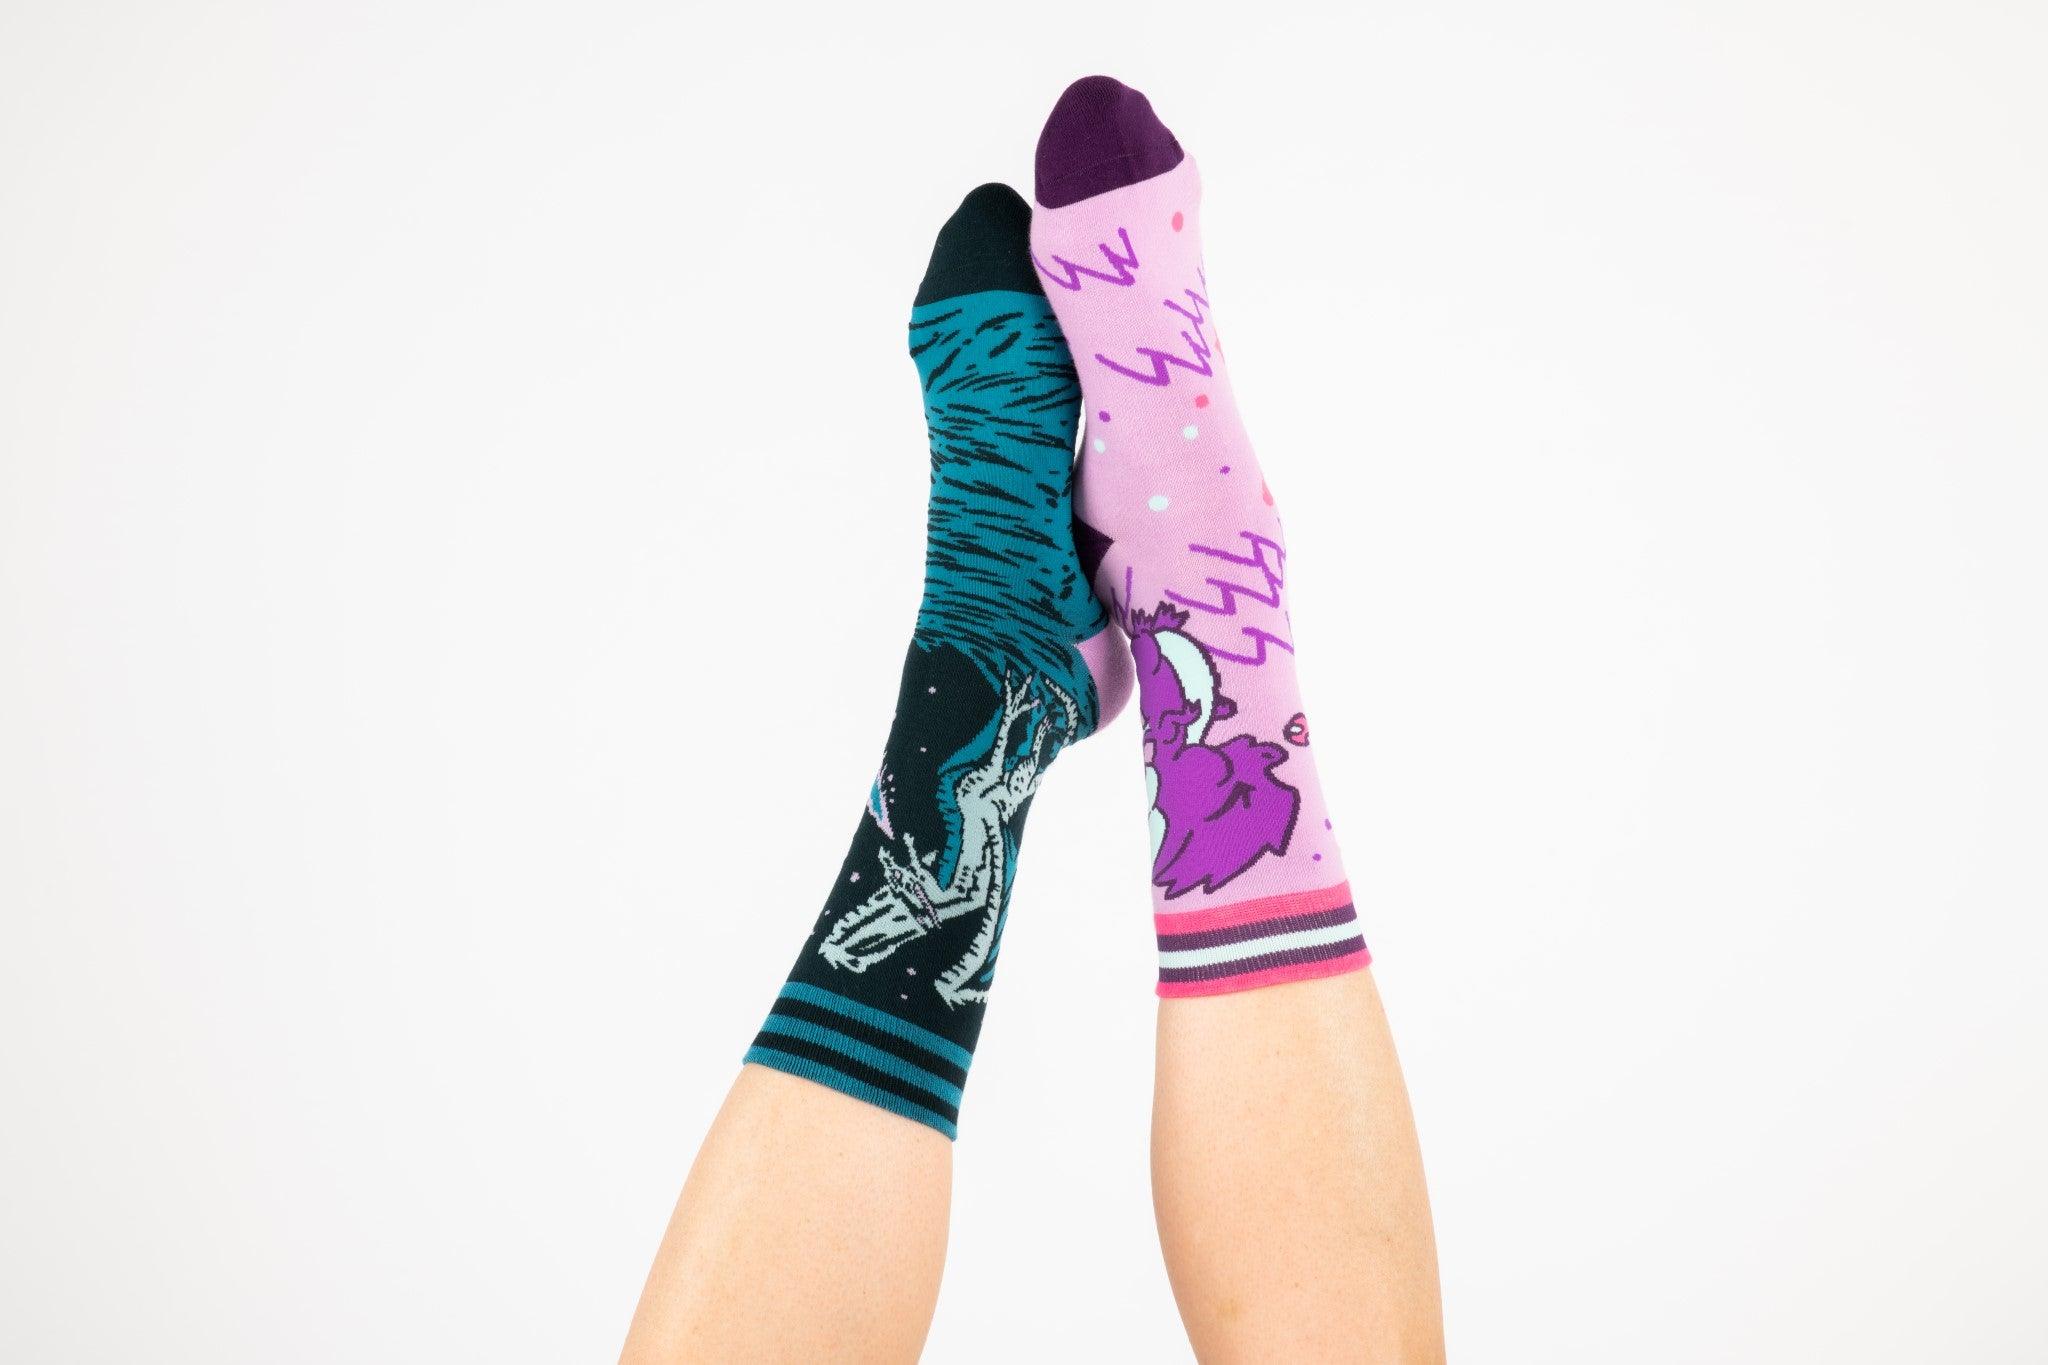 Cute Dragon Socks - FootClothes